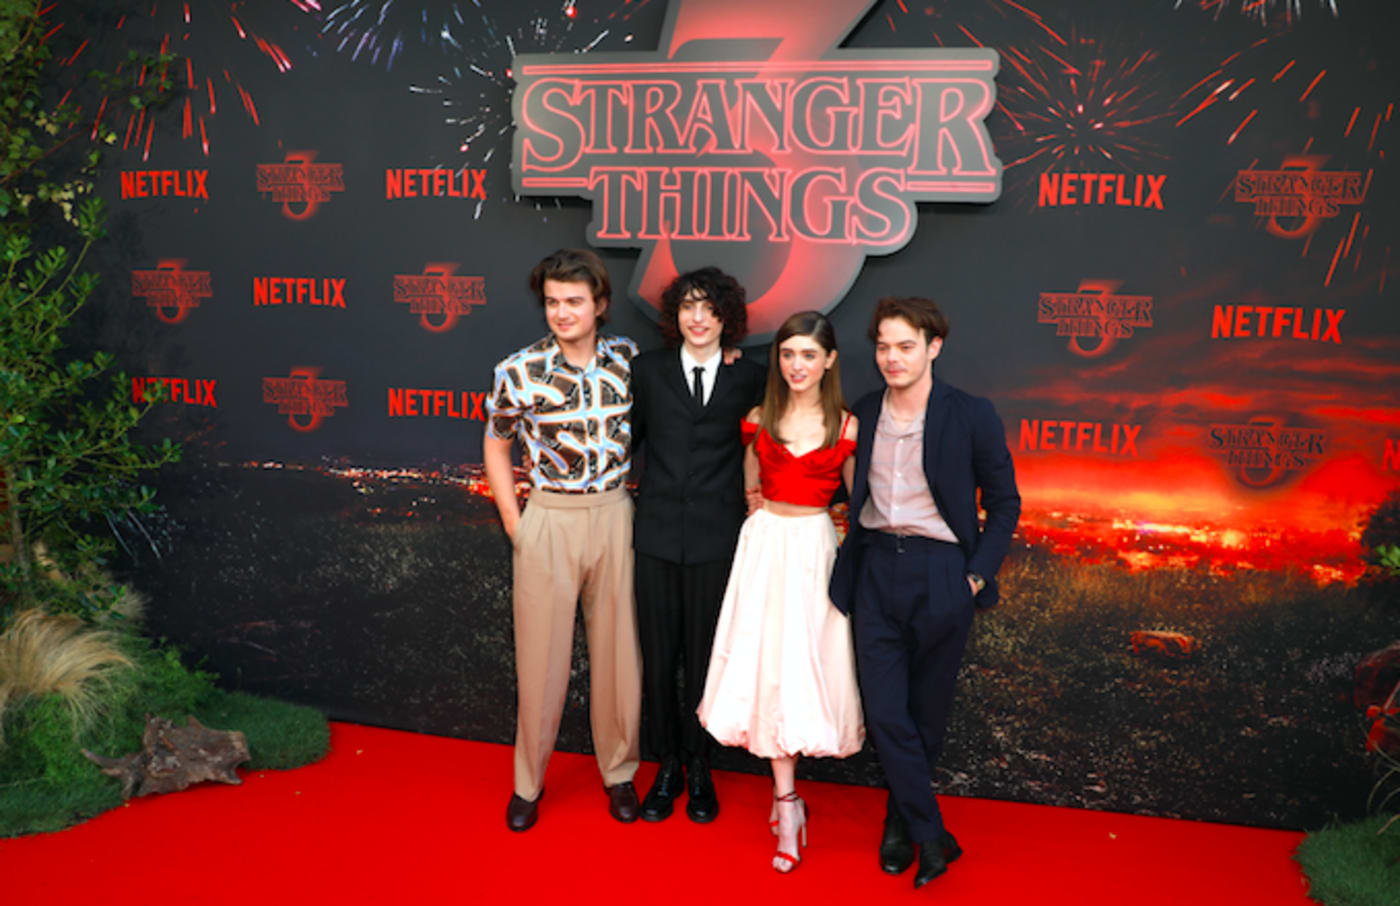 'Stranger Things' cast